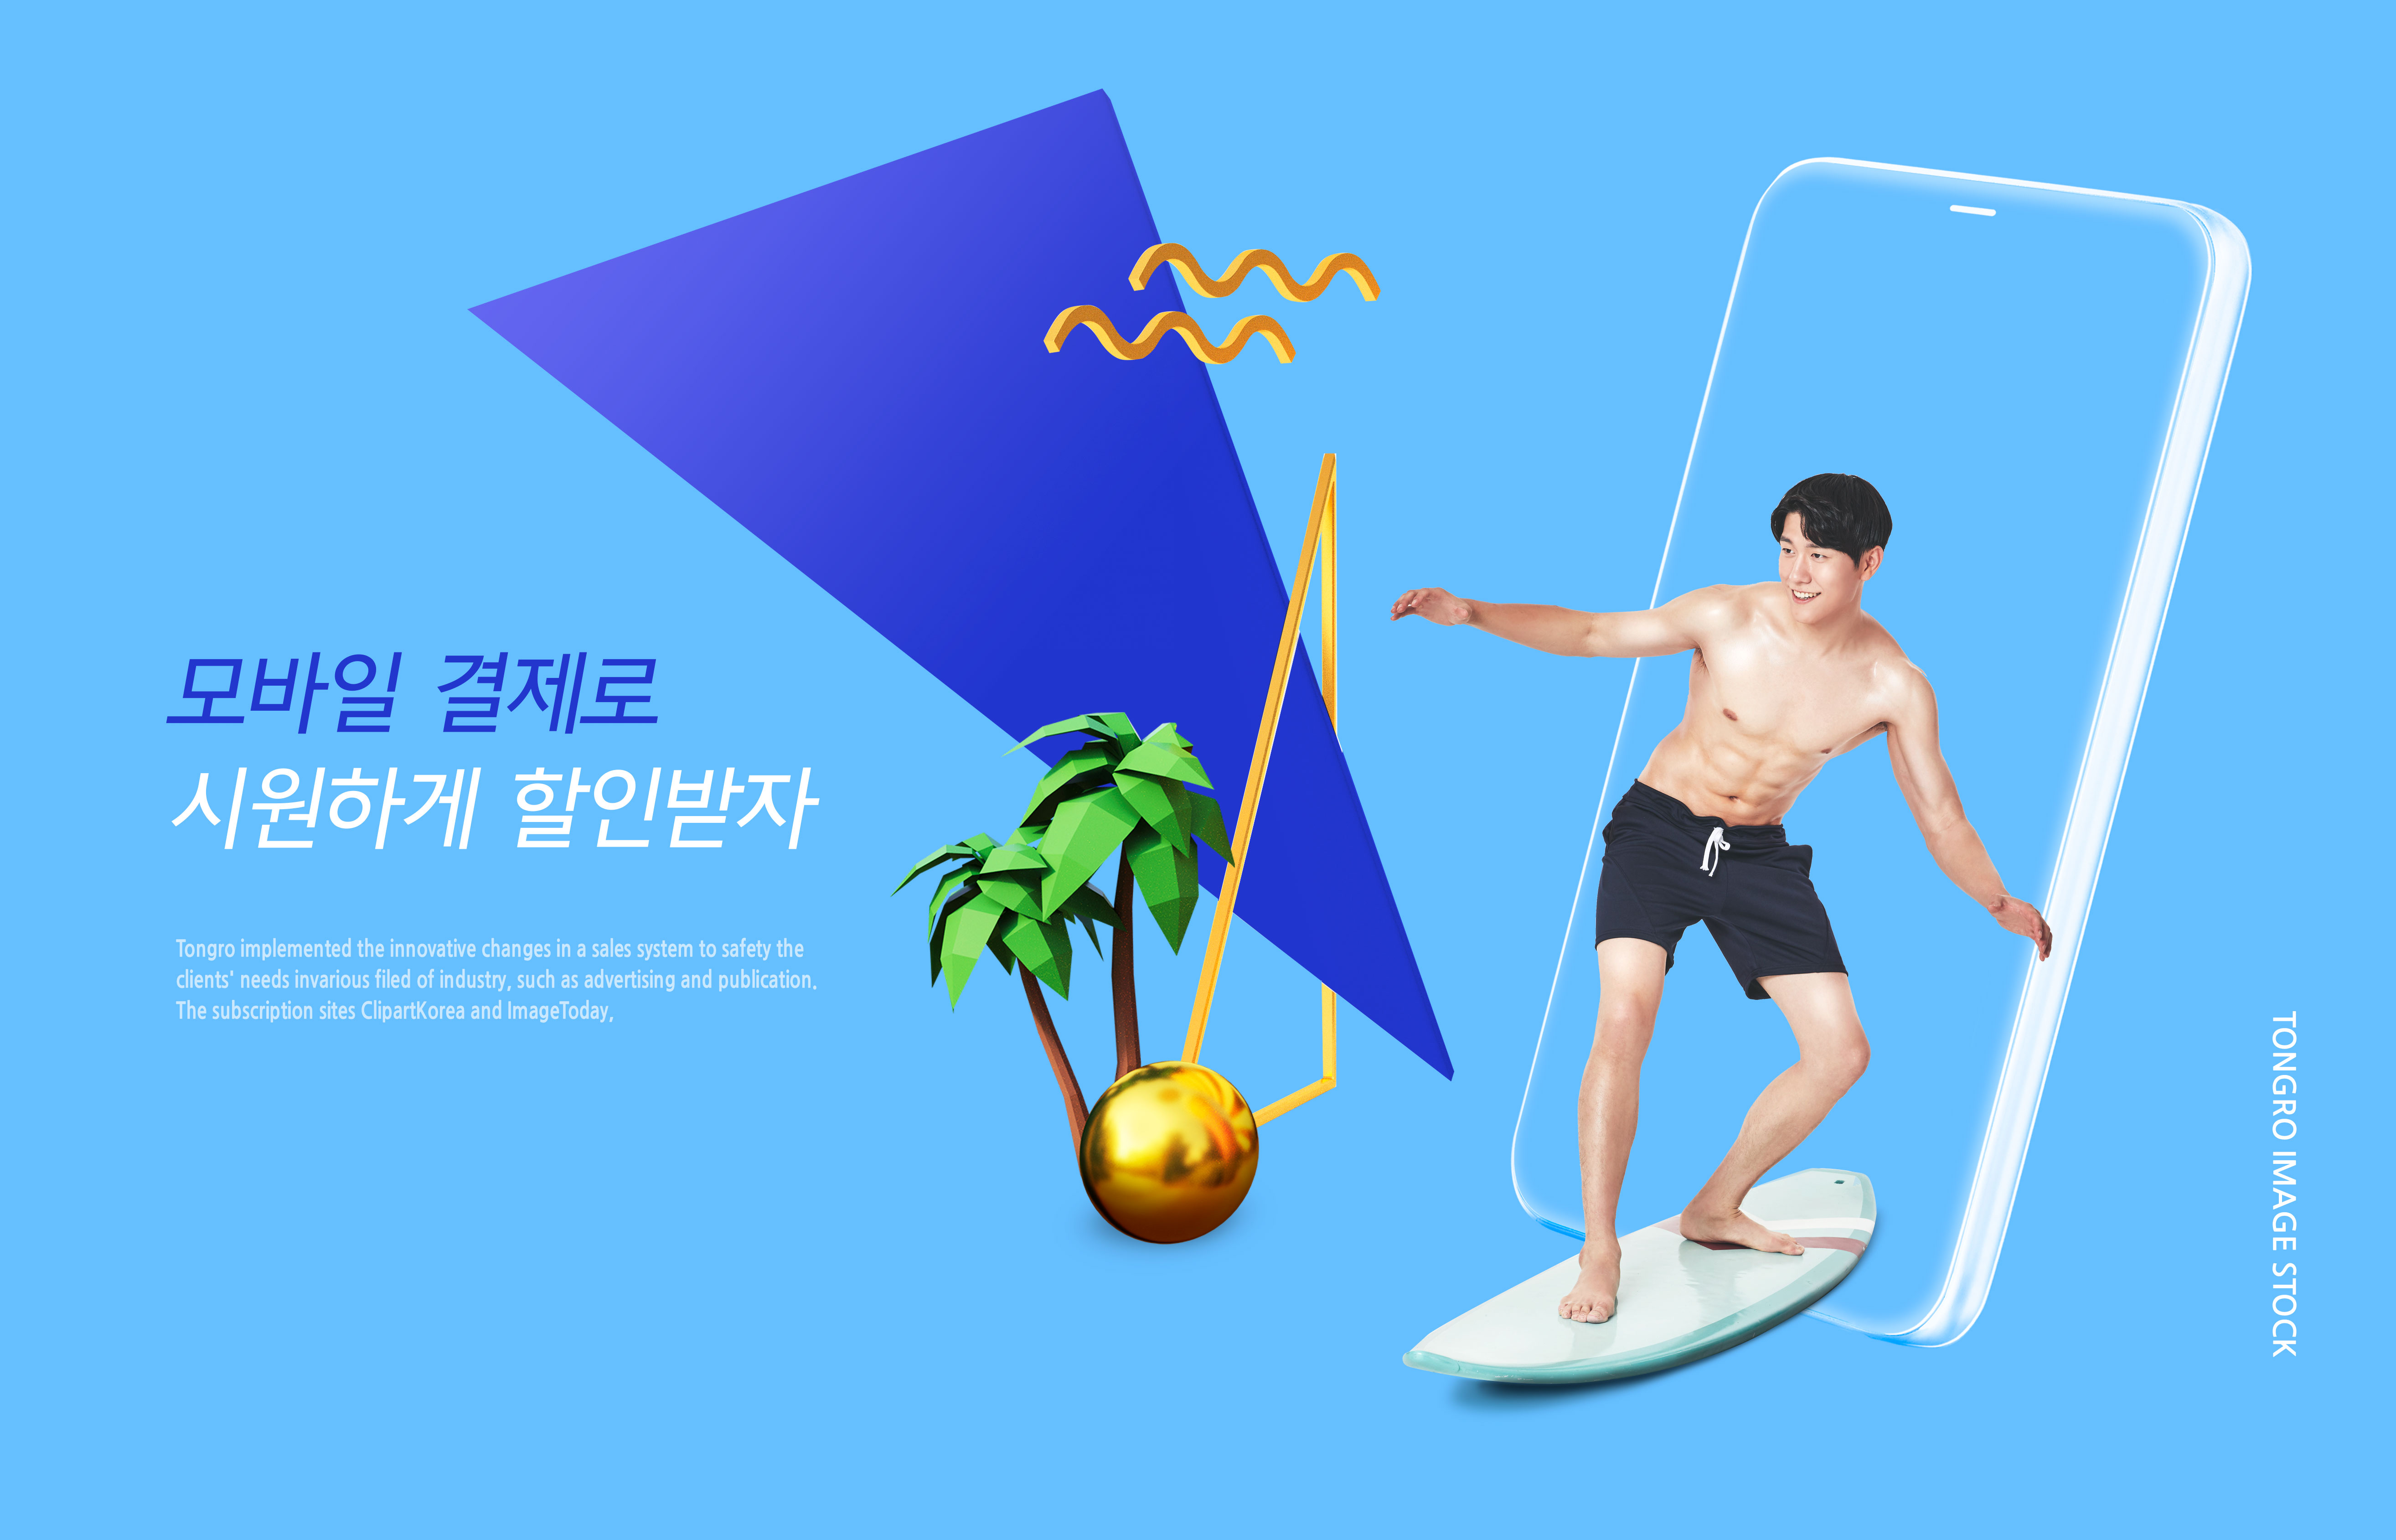 夏季海滩冲浪活动宣传传单海报设计套装插图(3)